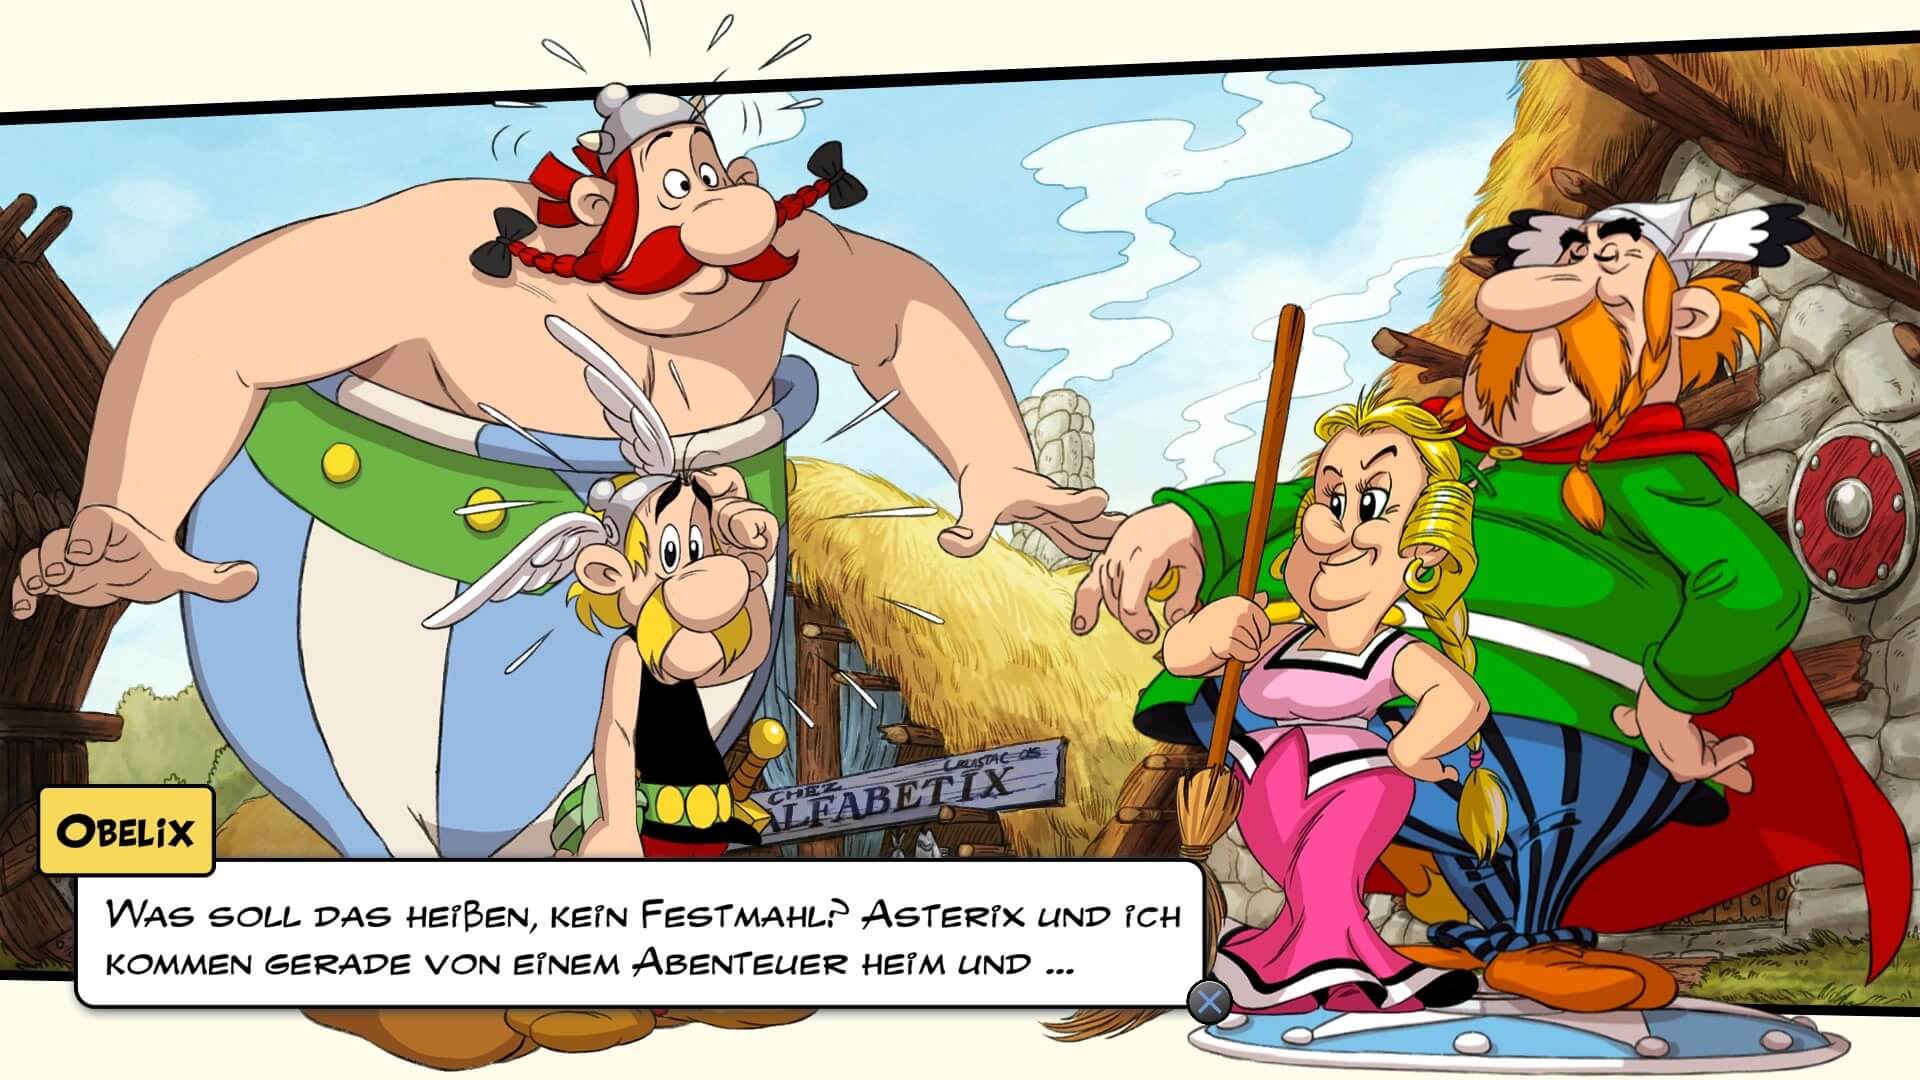 asterix & obelix slap them all! 20211202211924